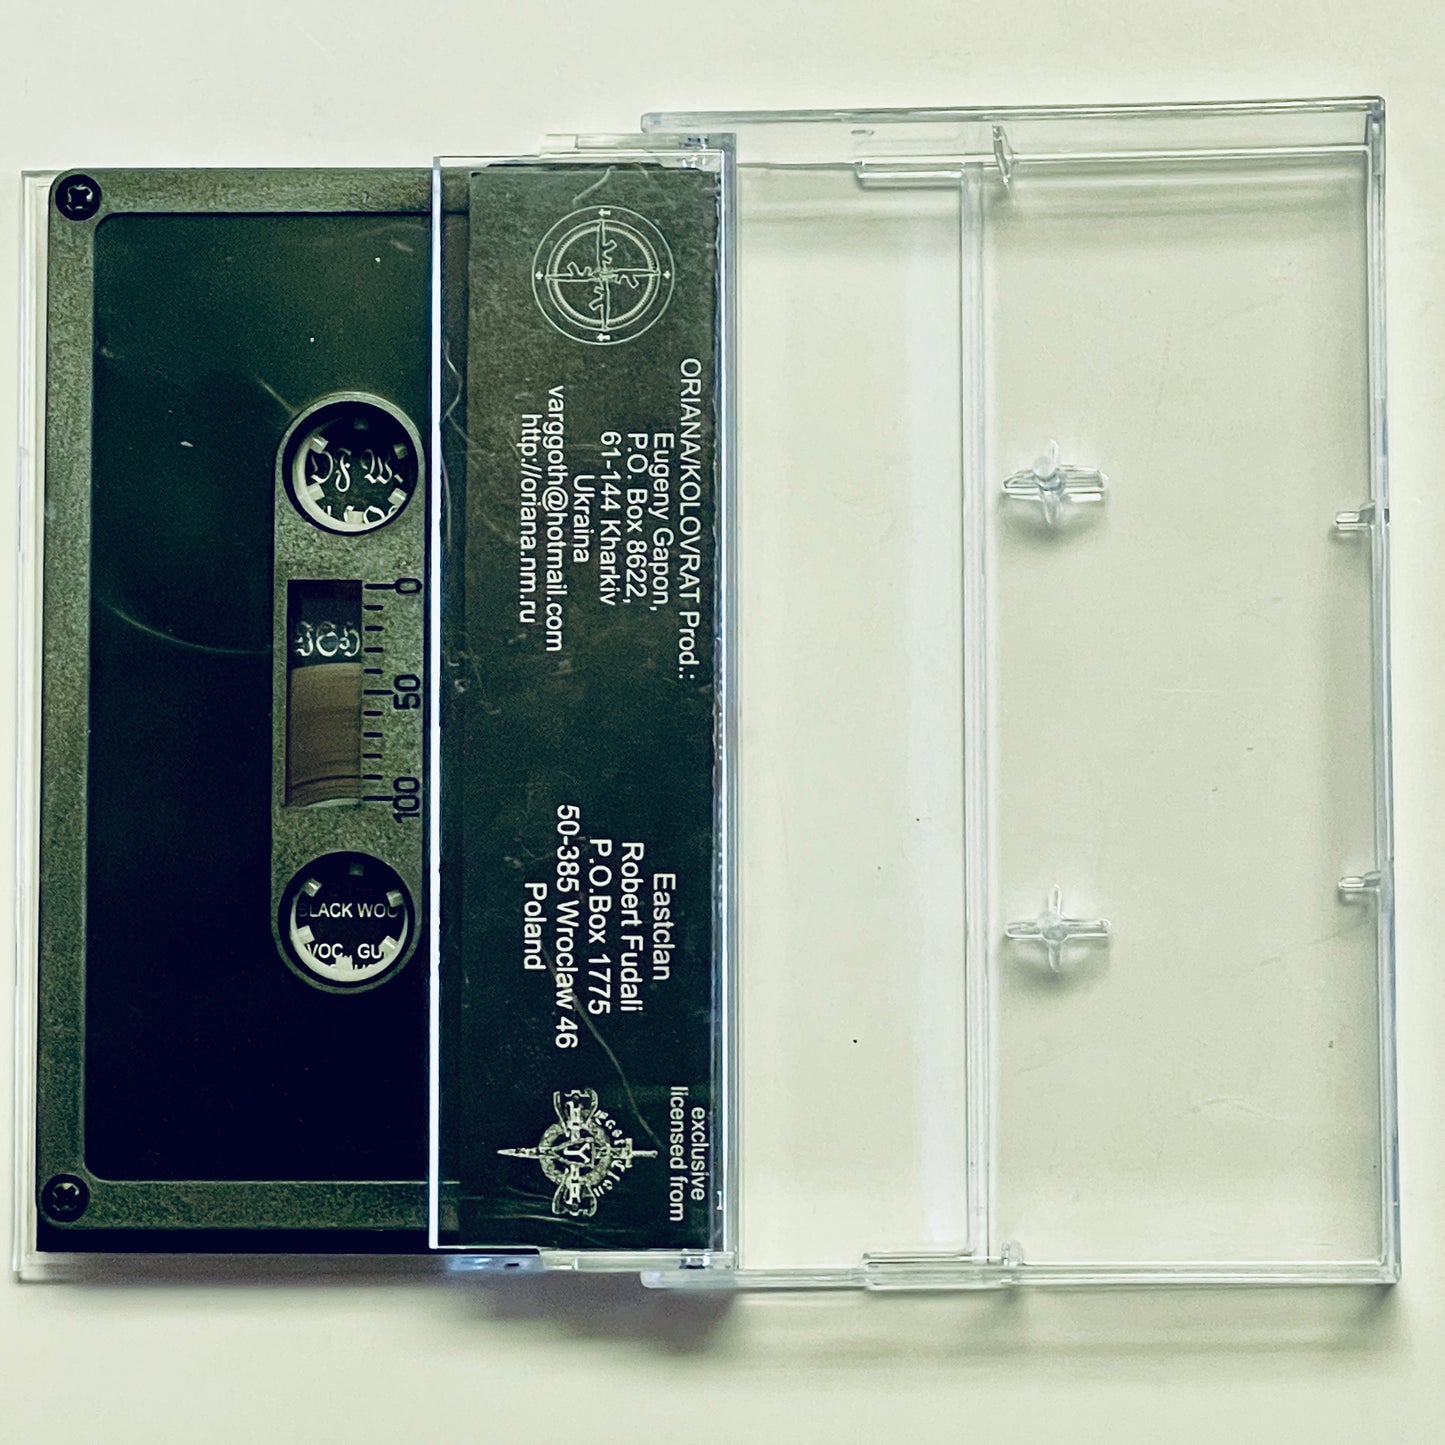 Graveland – Carpathian Wolves cassette tape (used)